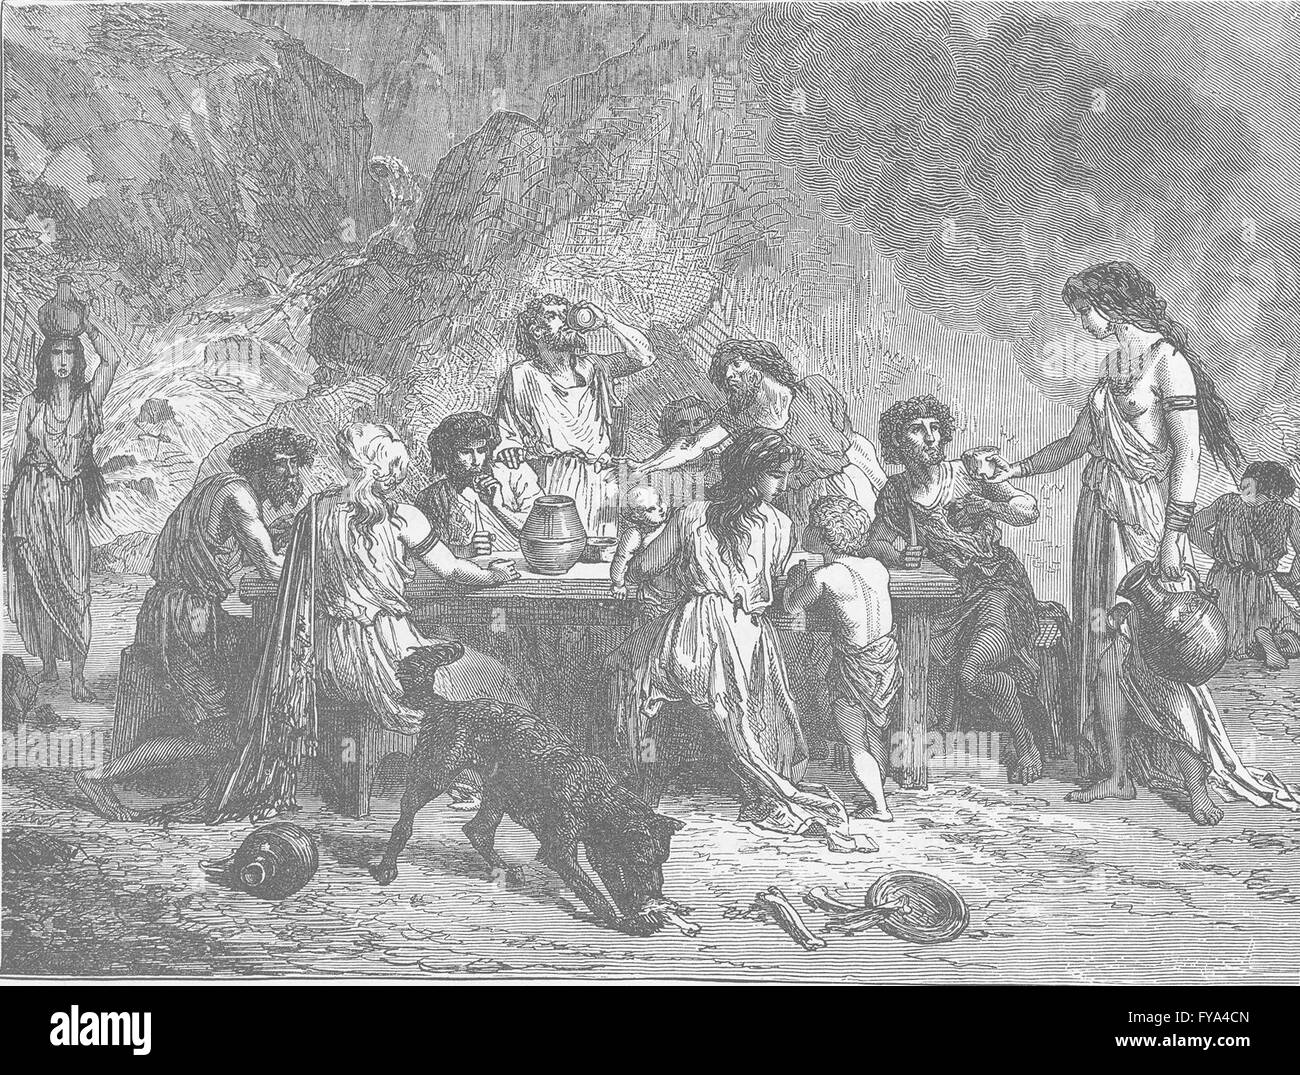 Edad de Bronce: Fiesta en la Edad de Bronce, antigüedades imprimir 1893 Foto de stock